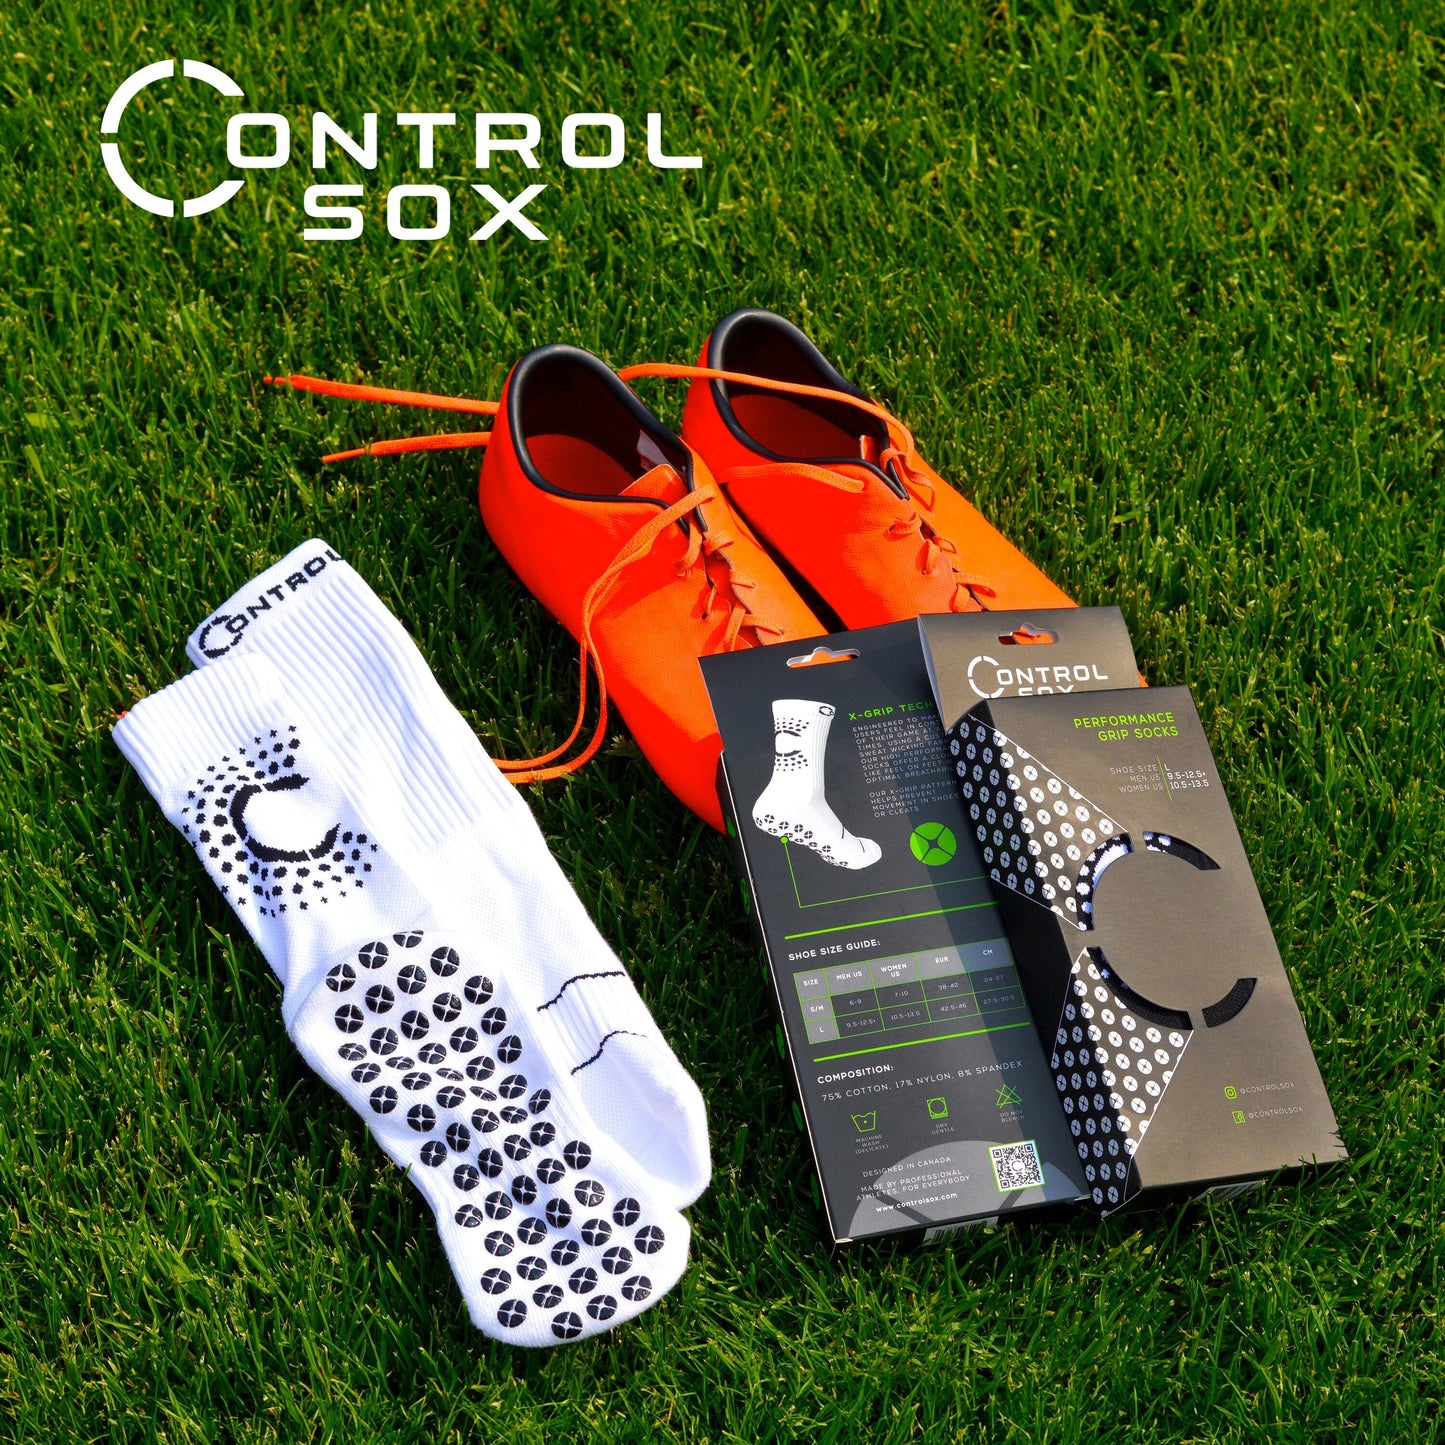 Control Sox 2.0 Grip Socks Control Sox 